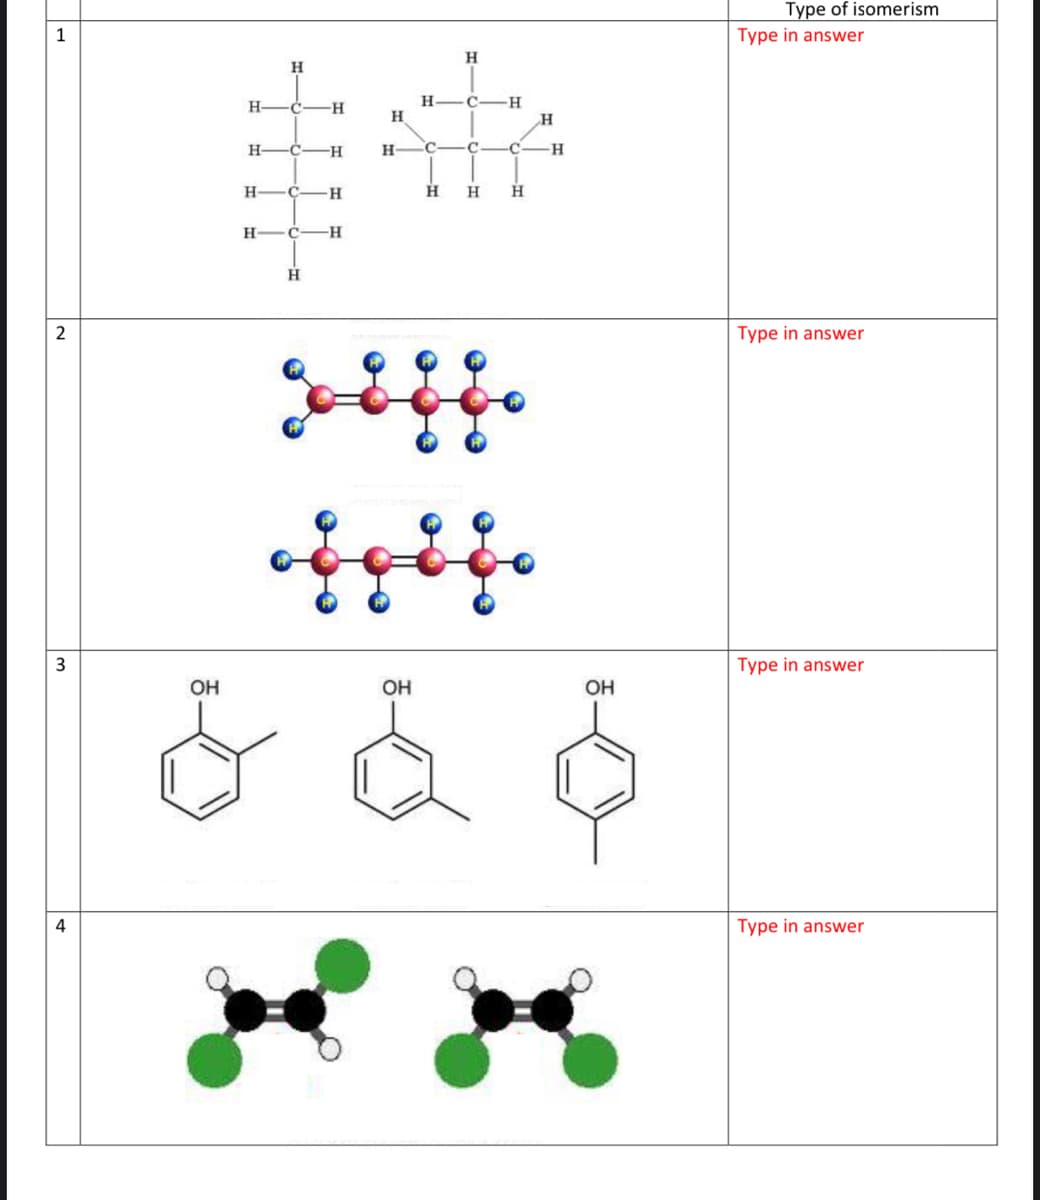 Type of isomerism
1
Type in answer
**
H
H
H-
-C-
H
H
C-H
H
-C-
H
H
C-
-H
H
C-
-H-
H
H
H
H
-H-
H
2
Type in answer
3
Type in answer
OH
OH
OH
4
Type in answer
